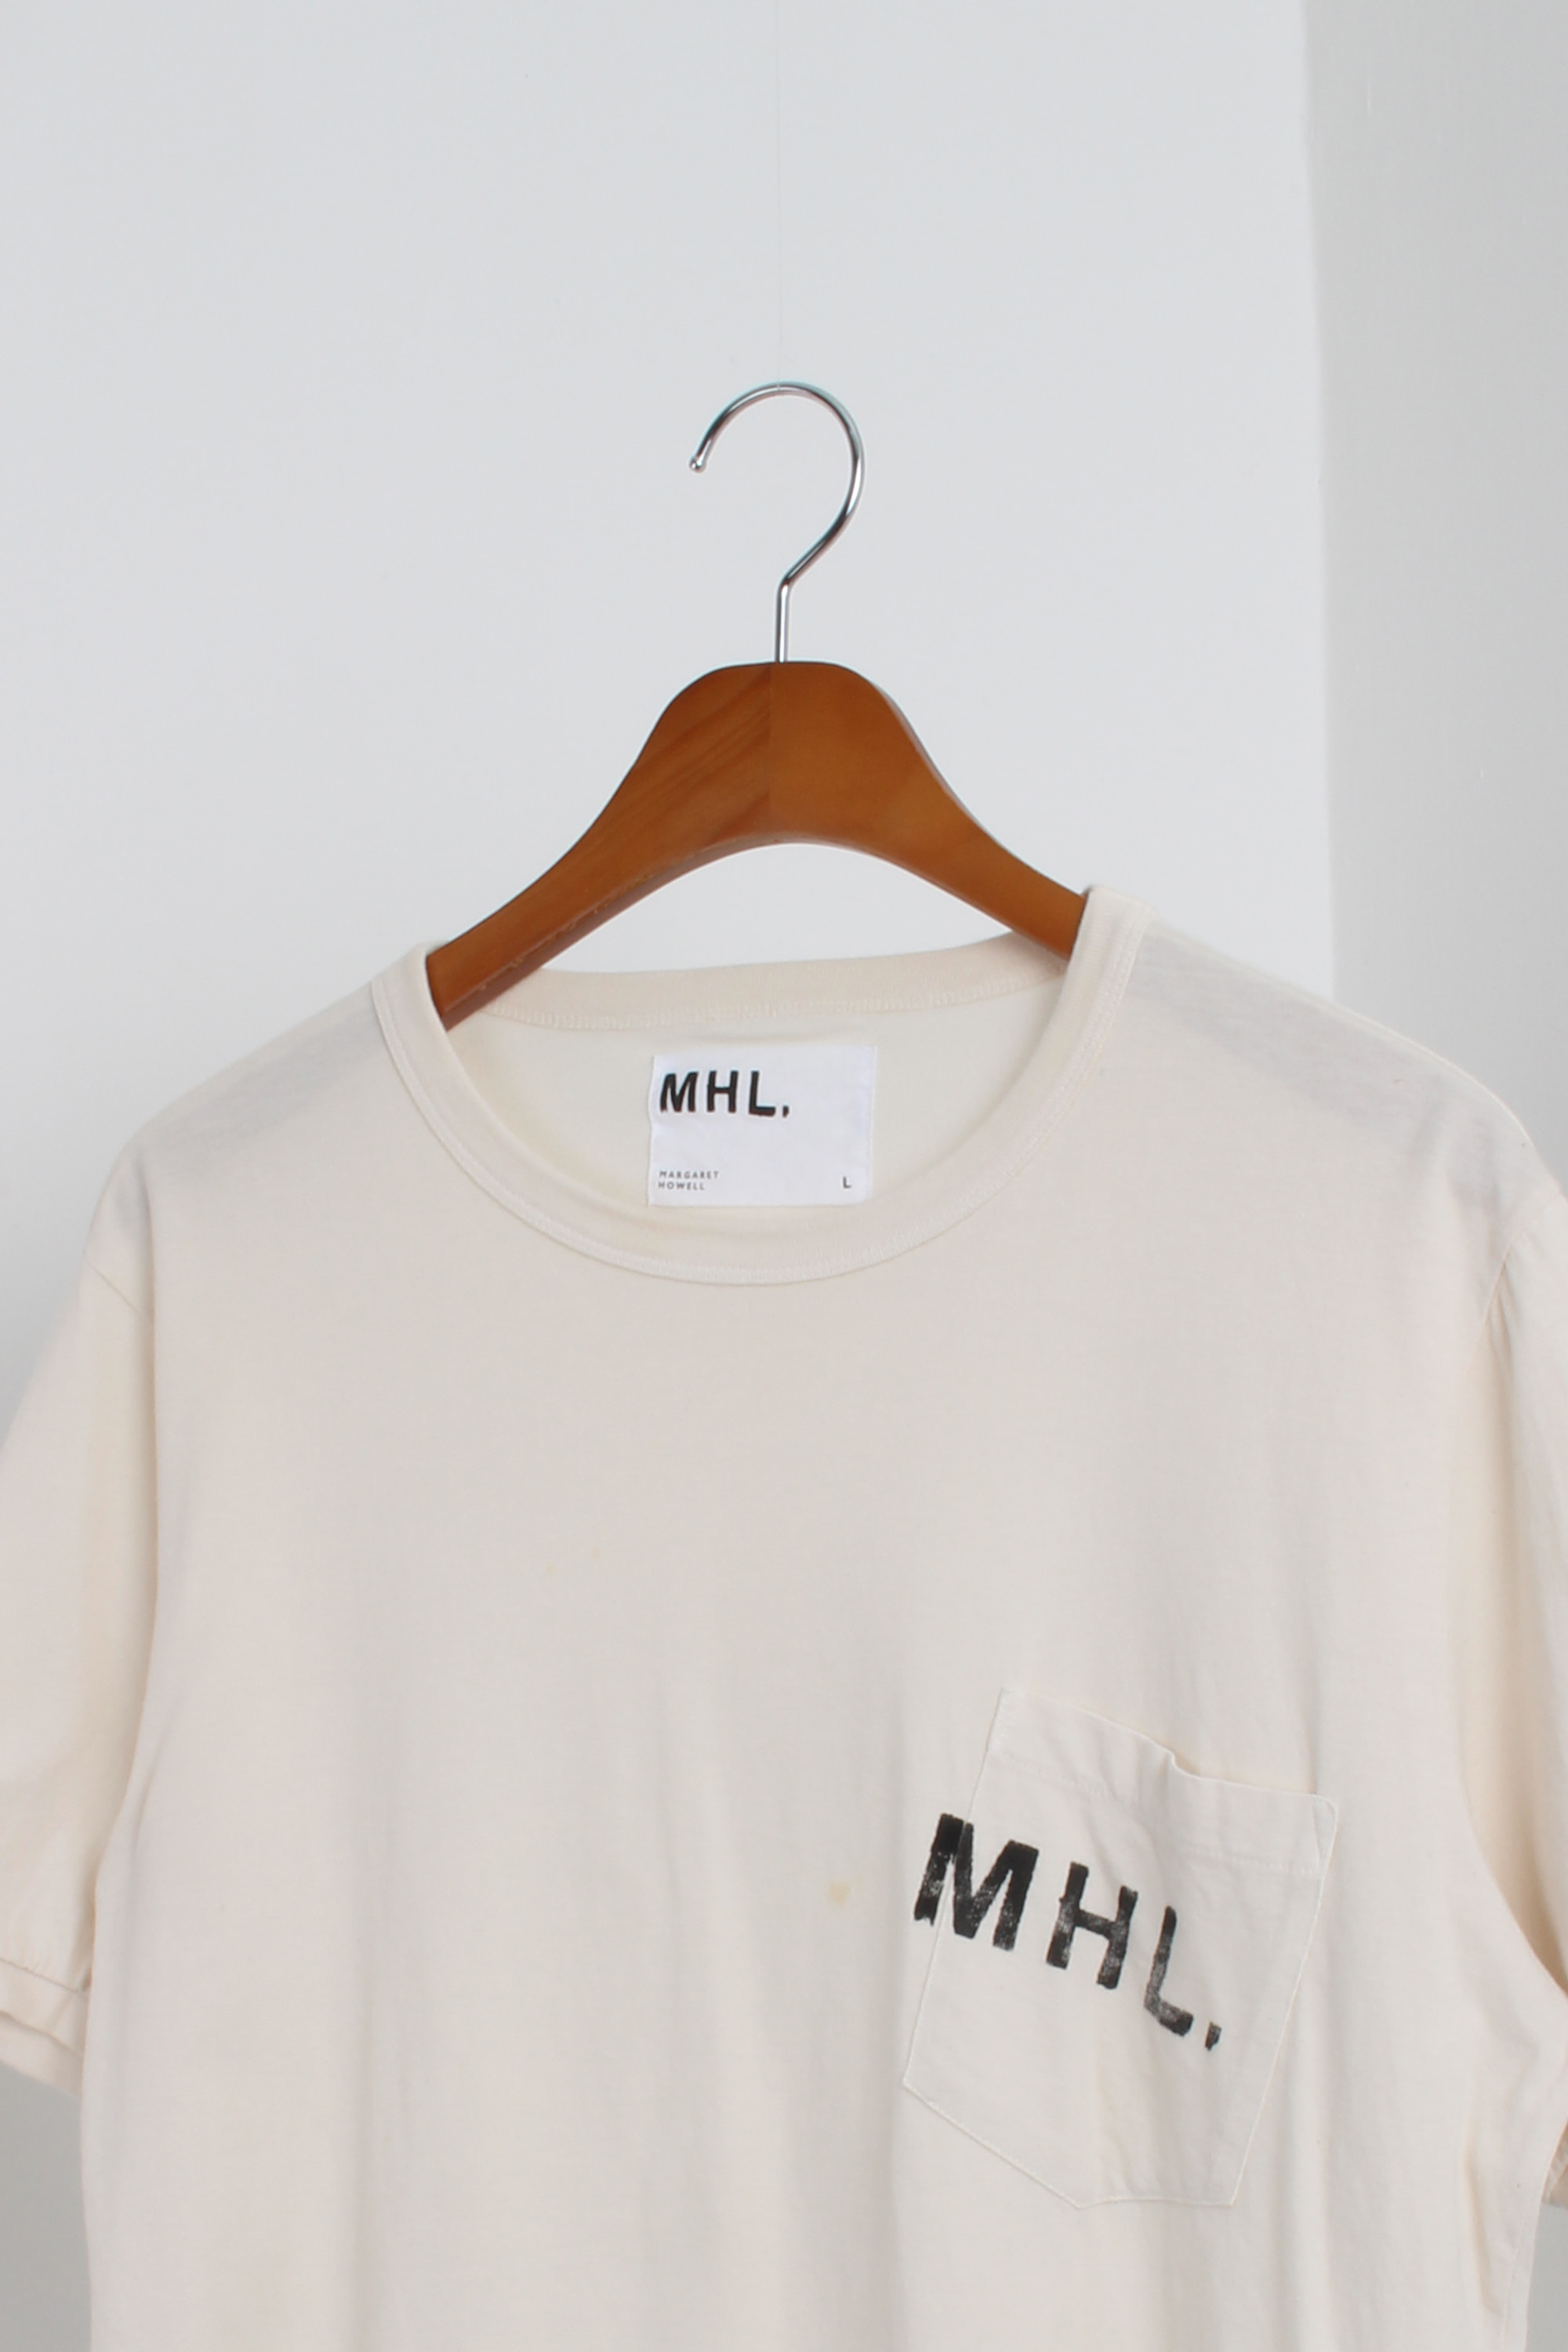 MHL Logo Tee